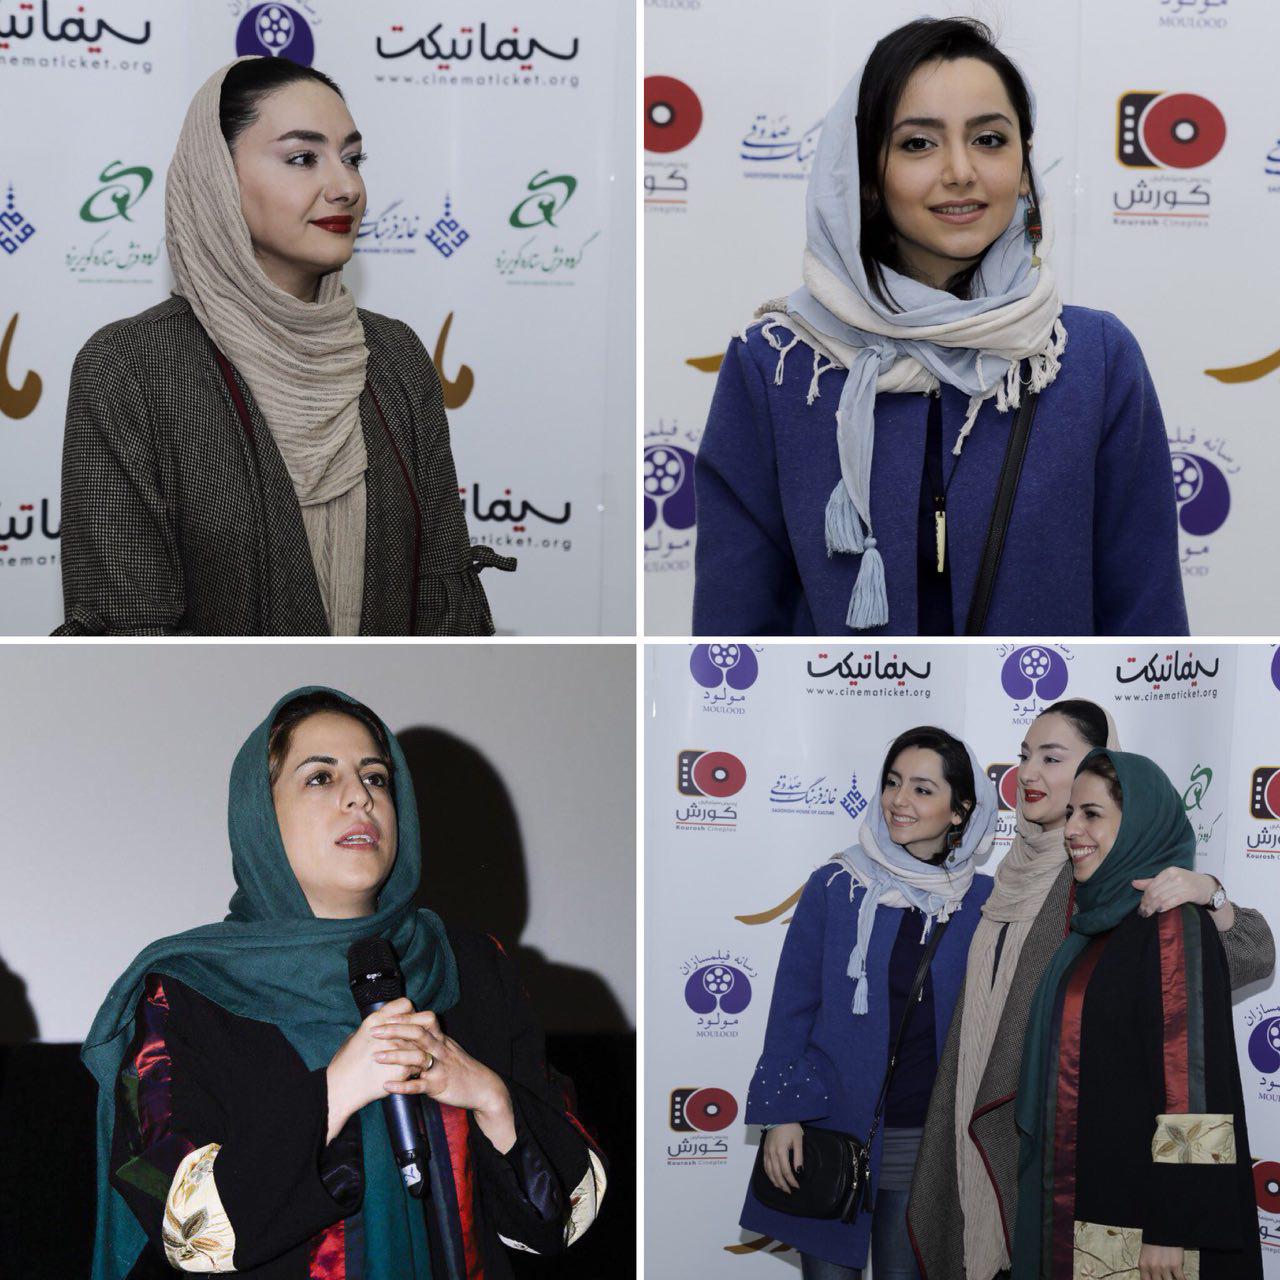 هانیه توسلی در اکران افتتاحیه فیلم سینمایی مادری به همراه نازنین بیاتی و رقیه توکلی